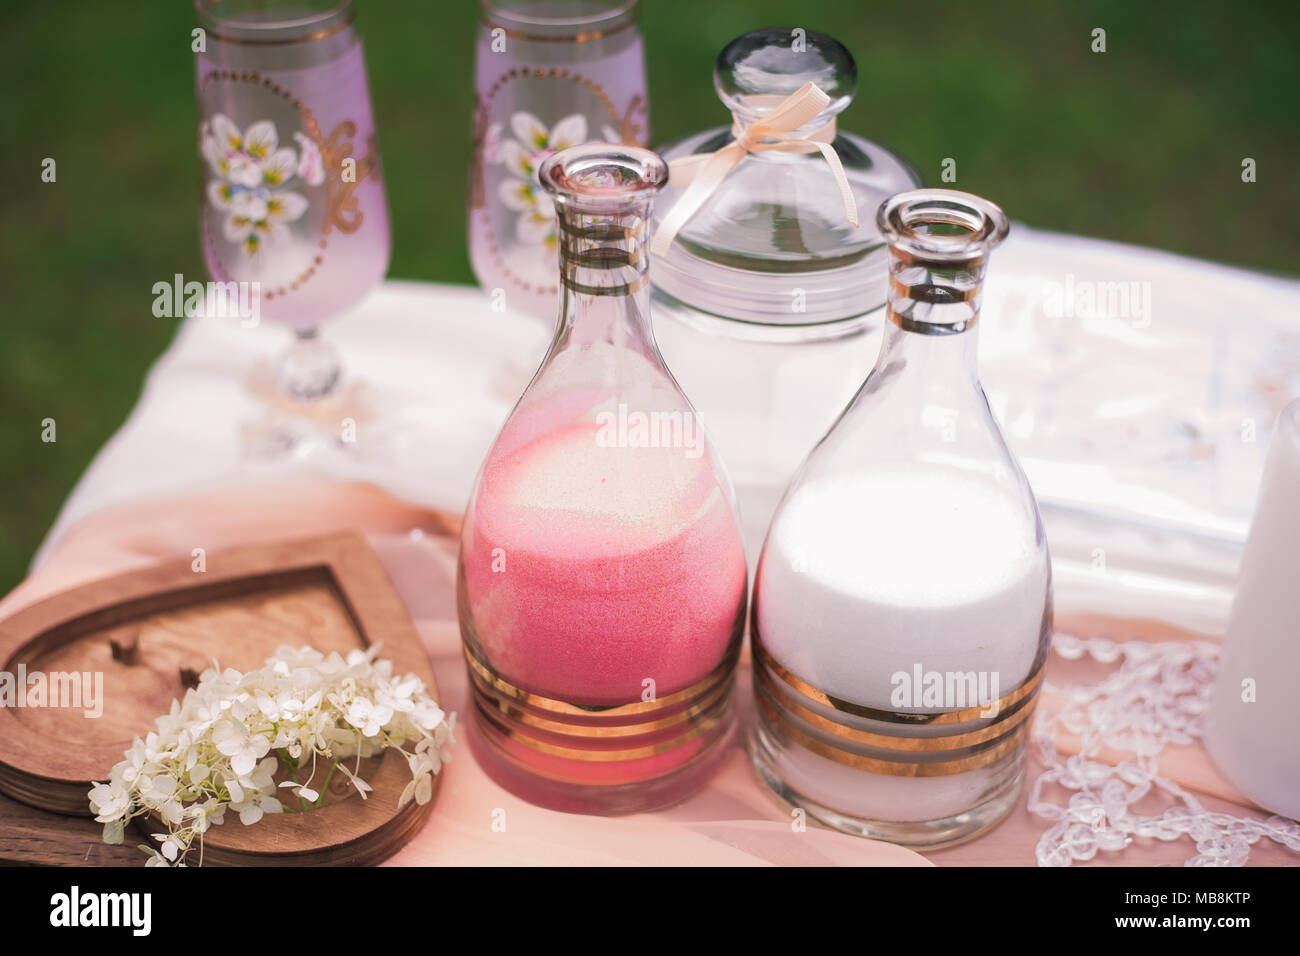 Detailansicht von Elementen der Hochzeit sand Zeremonie. Zwei Flaschen mit dekorativen rosa und weiße Farbe sand bereit für das Gießen in einer Vase als Symbol der un Stockfoto